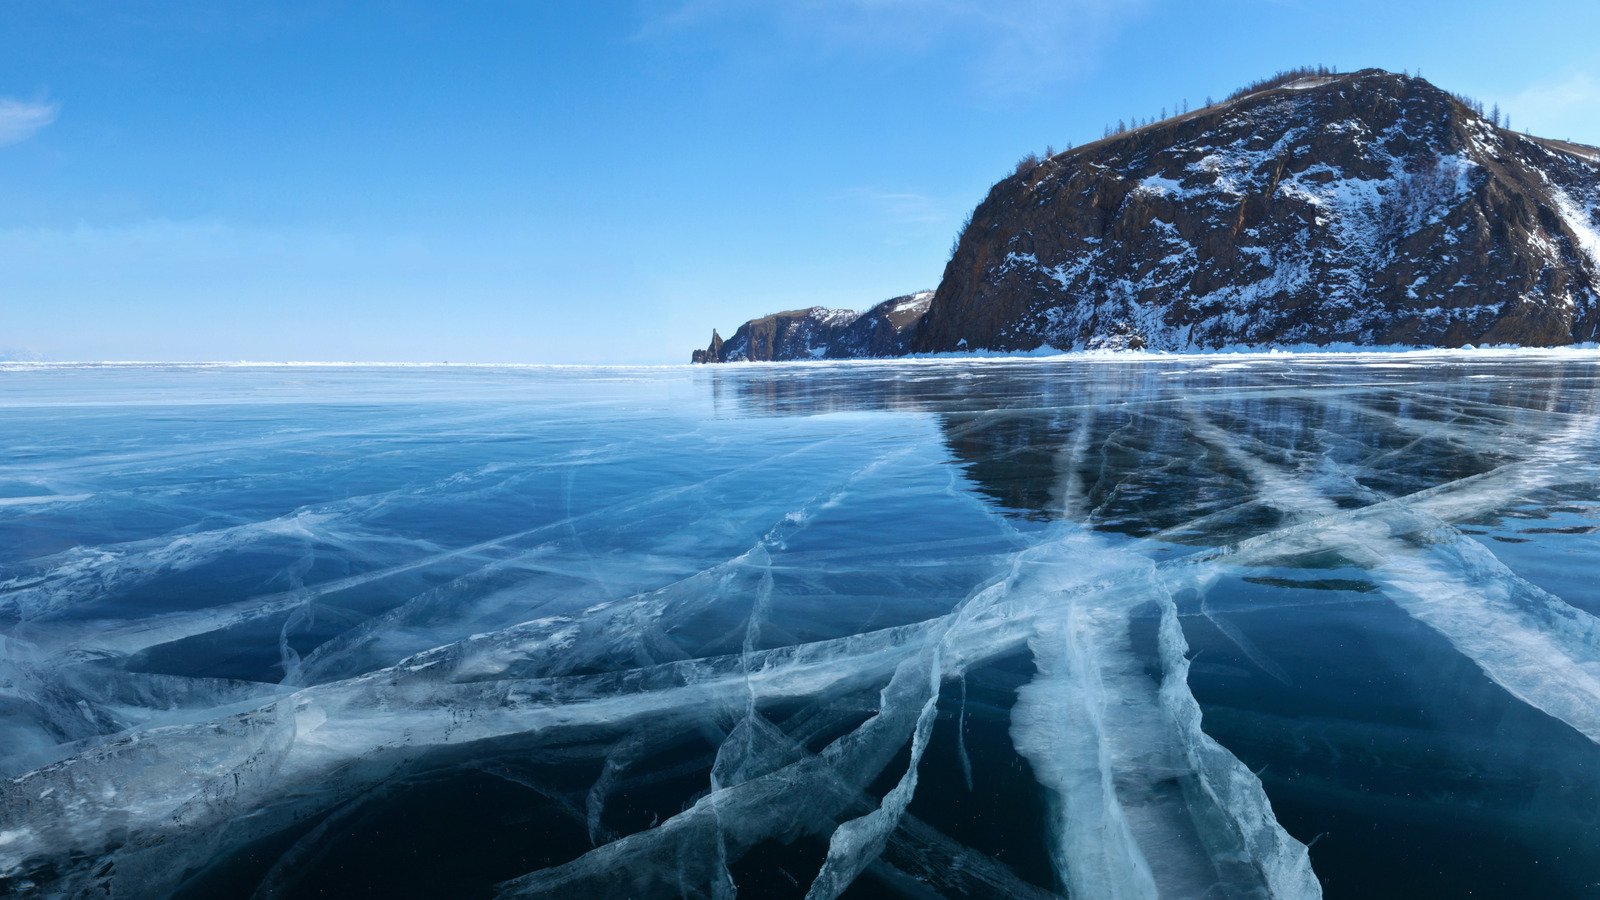 Про глубокое озеро. Озеро Байкал самое глубокое озеро в мире. Сибирь озеро Байкал. Байкал самое большое озеро в мире. Крупное водохранилище Байкал.